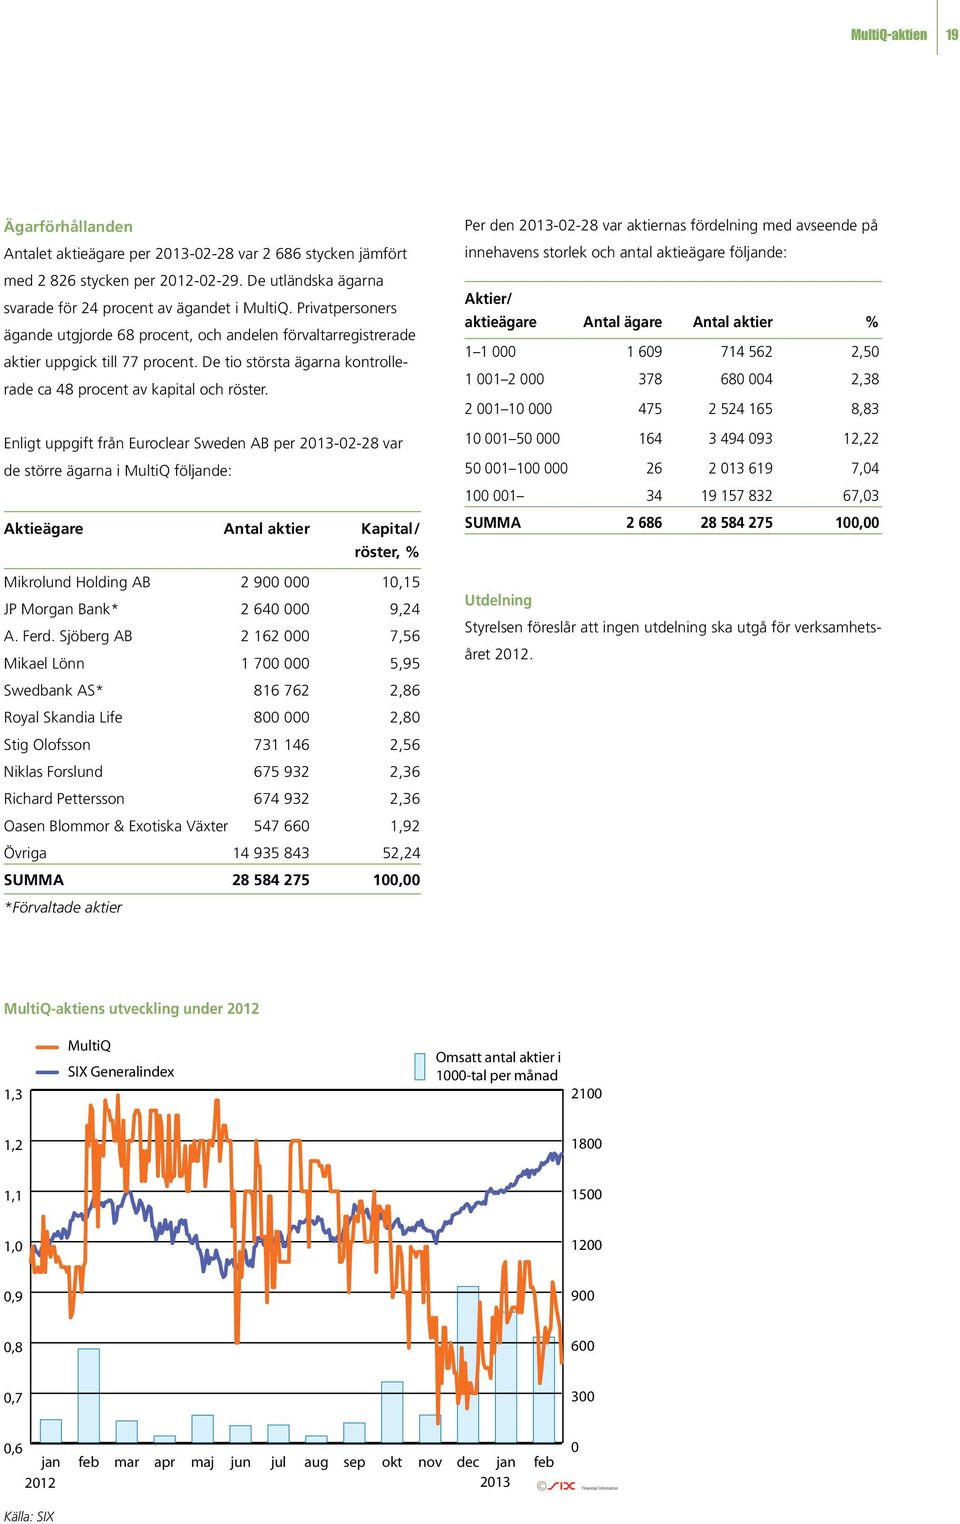 Enligt uppgift från Euroclear Sweden AB per 2013-02-28 var de större ägarna i MultiQ följande: Aktieägare Antal aktier Kapital/ röster, % Mikrolund Holding AB 2 900 000 10,15 JP Morgan Bank* 2 640